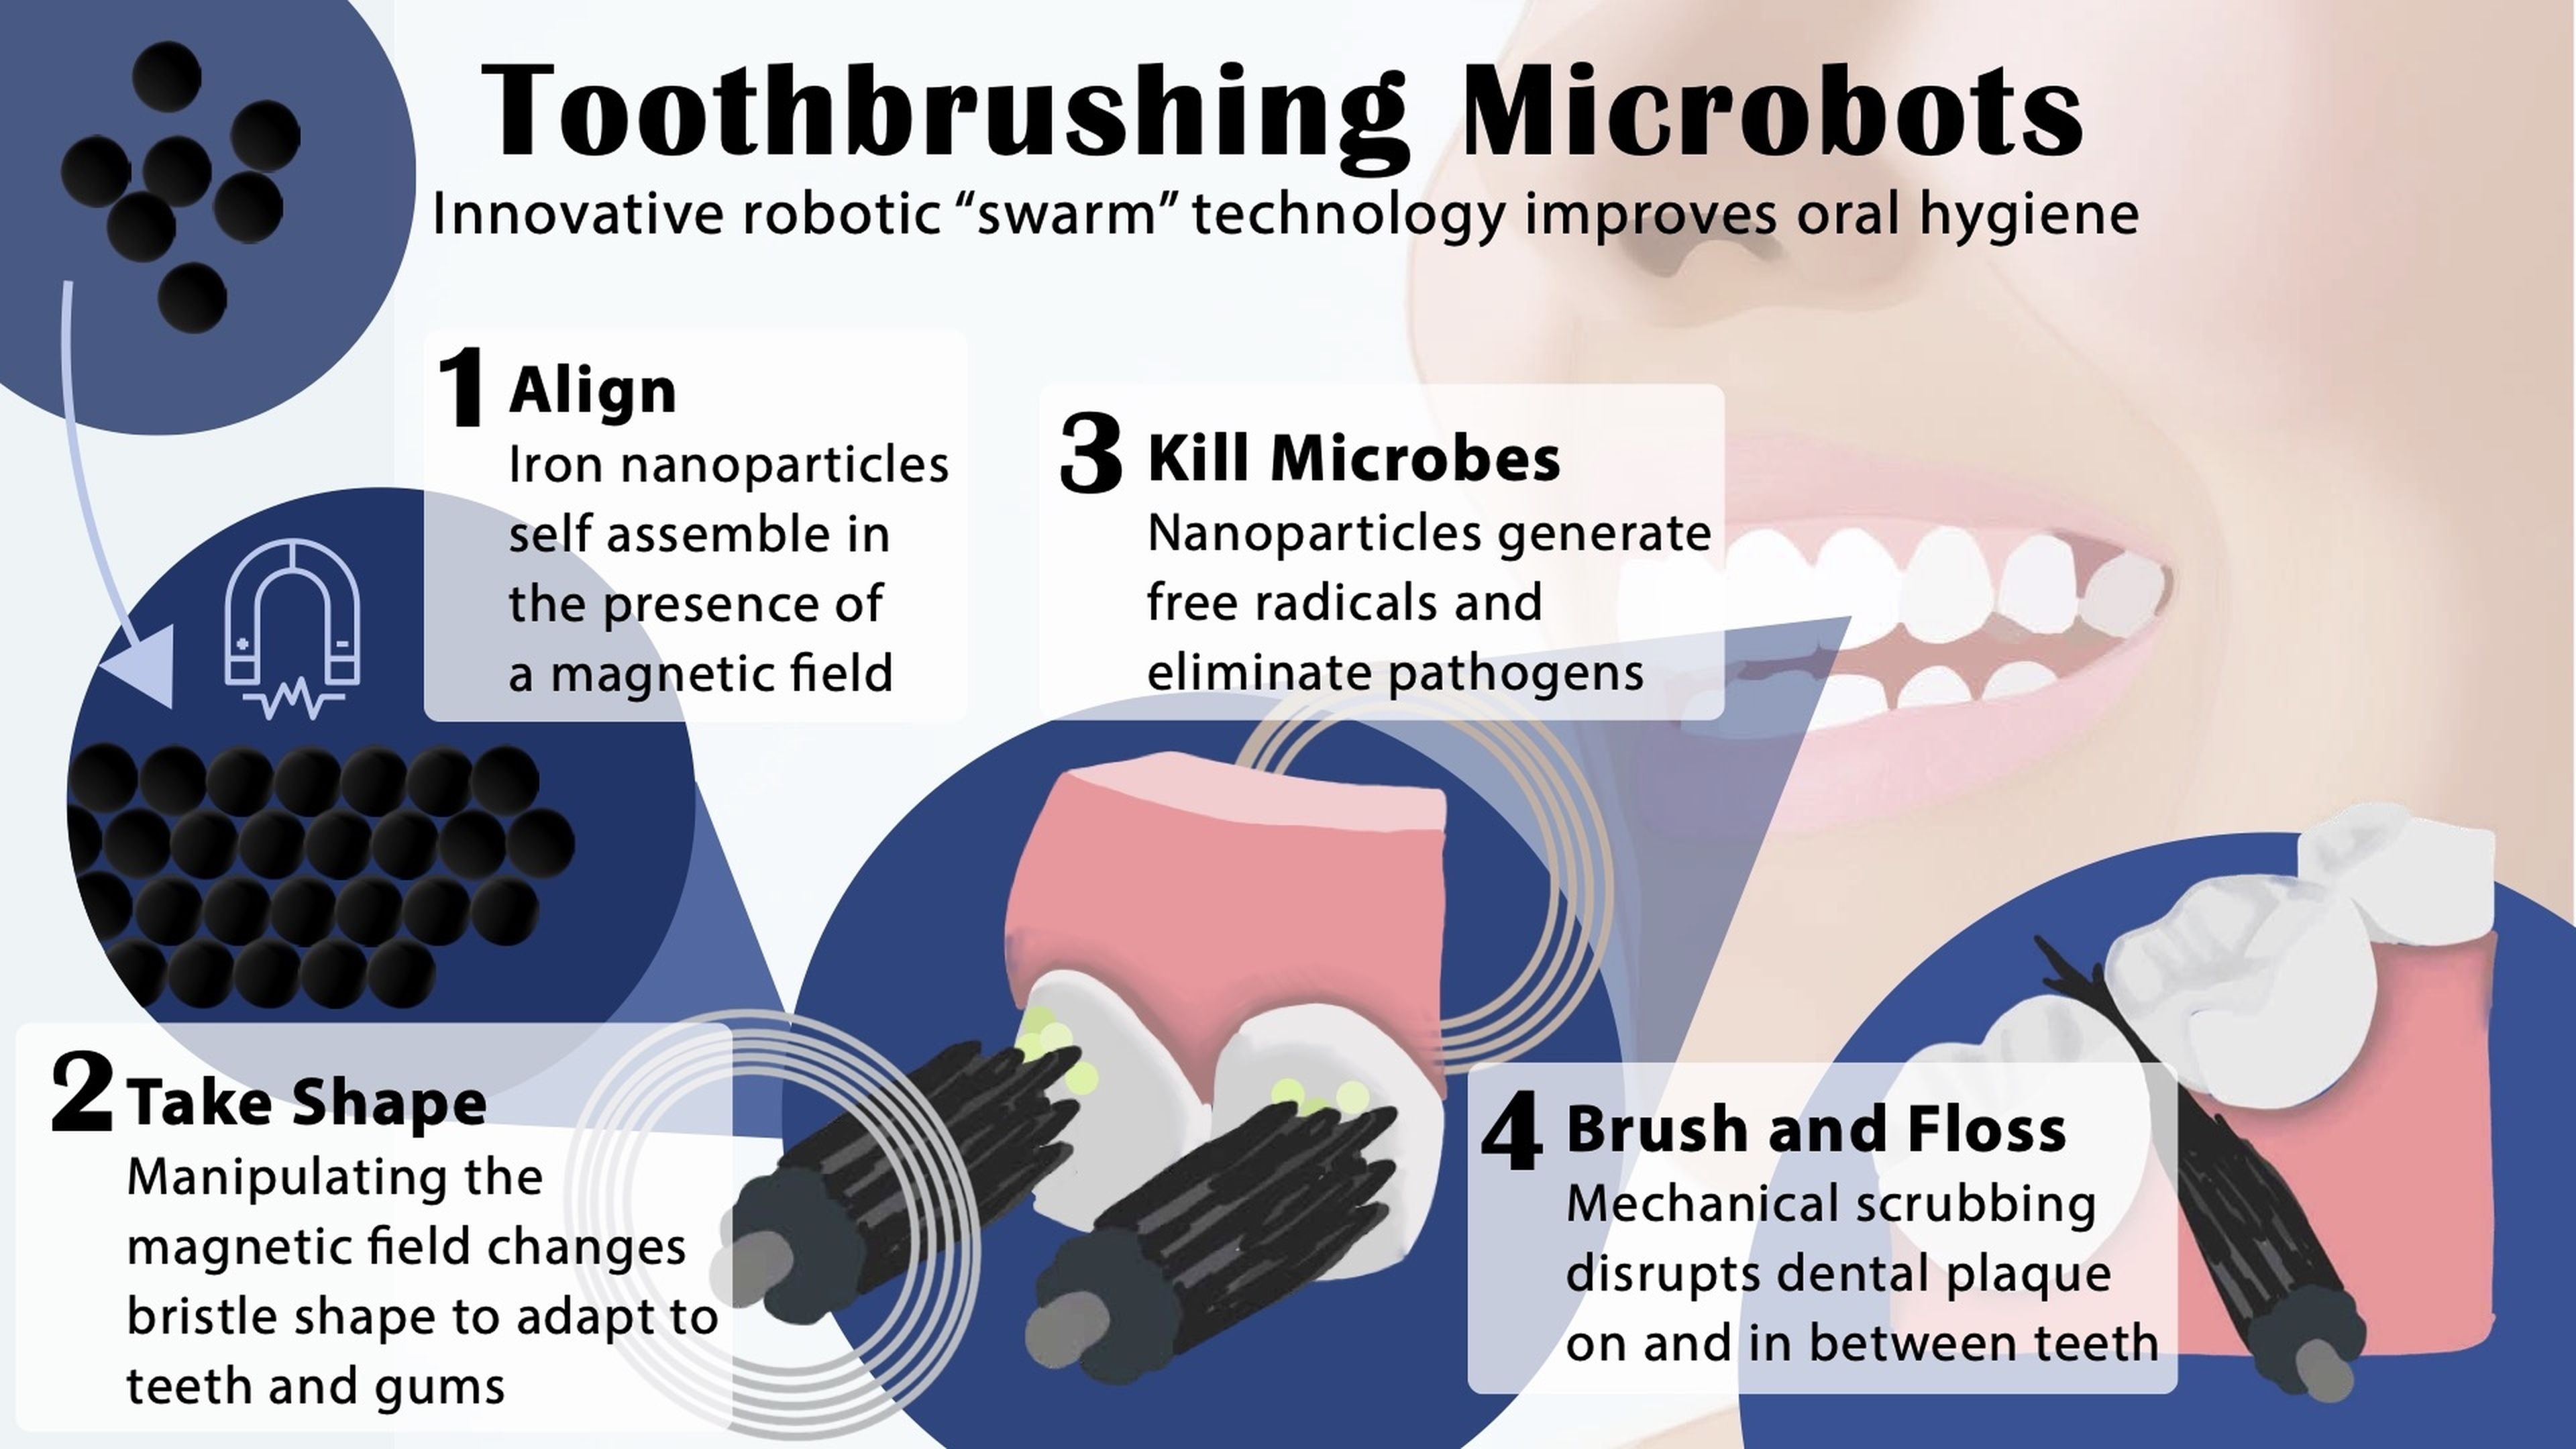 Adiós a los cepillos: unos microbots limpian los dientes ajustándose a su forma, y matan las bacterias